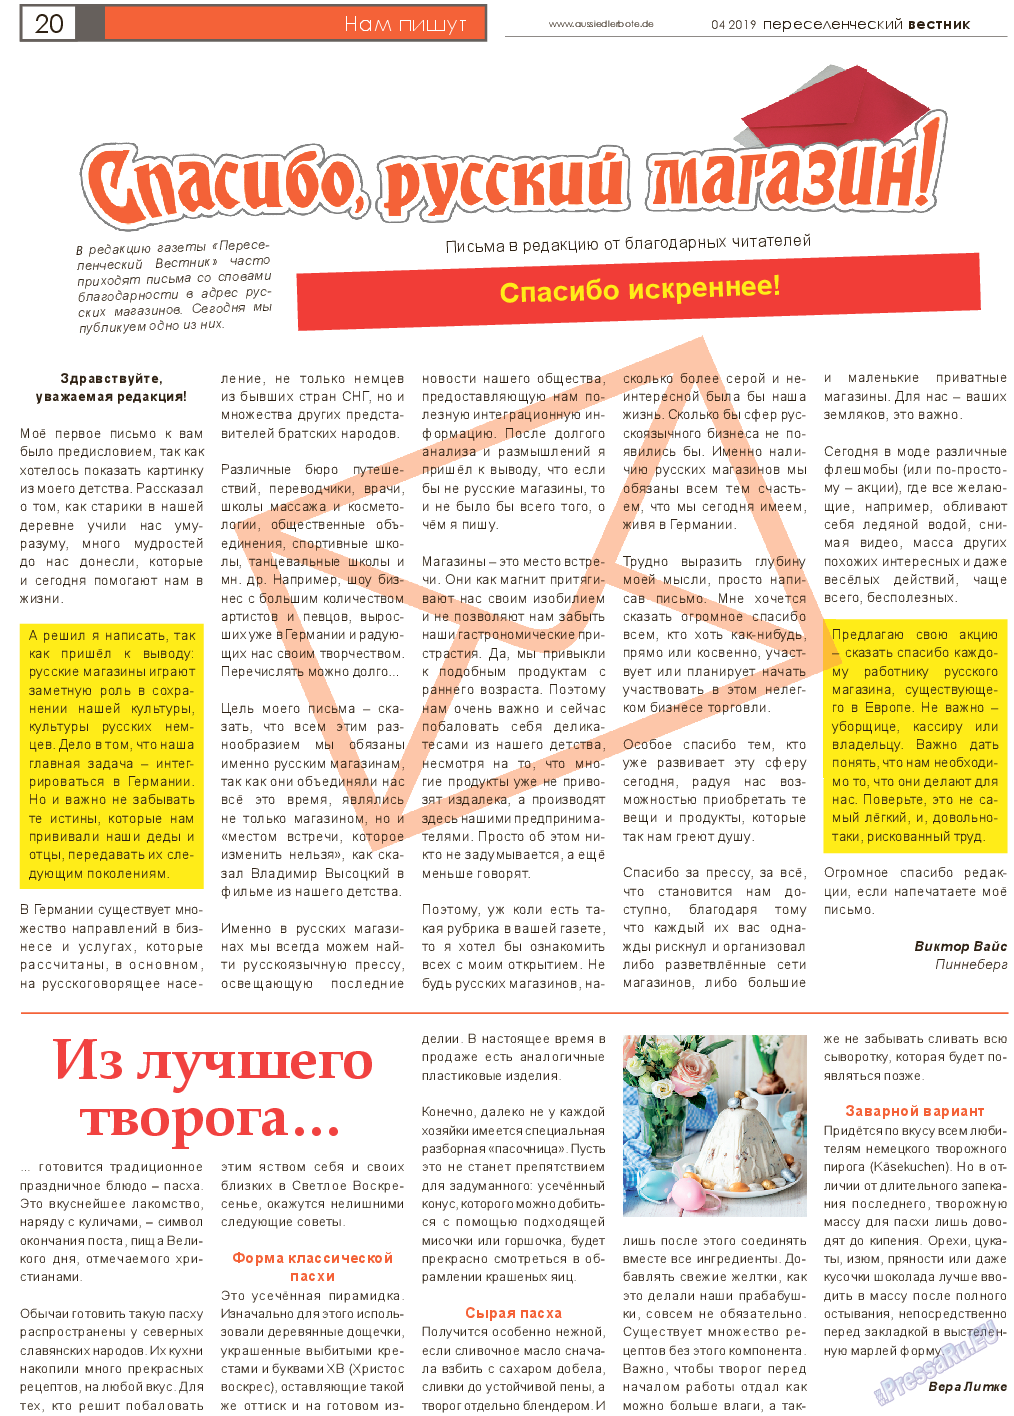 Переселенческий вестник (газета). 2019 год, номер 4, стр. 20